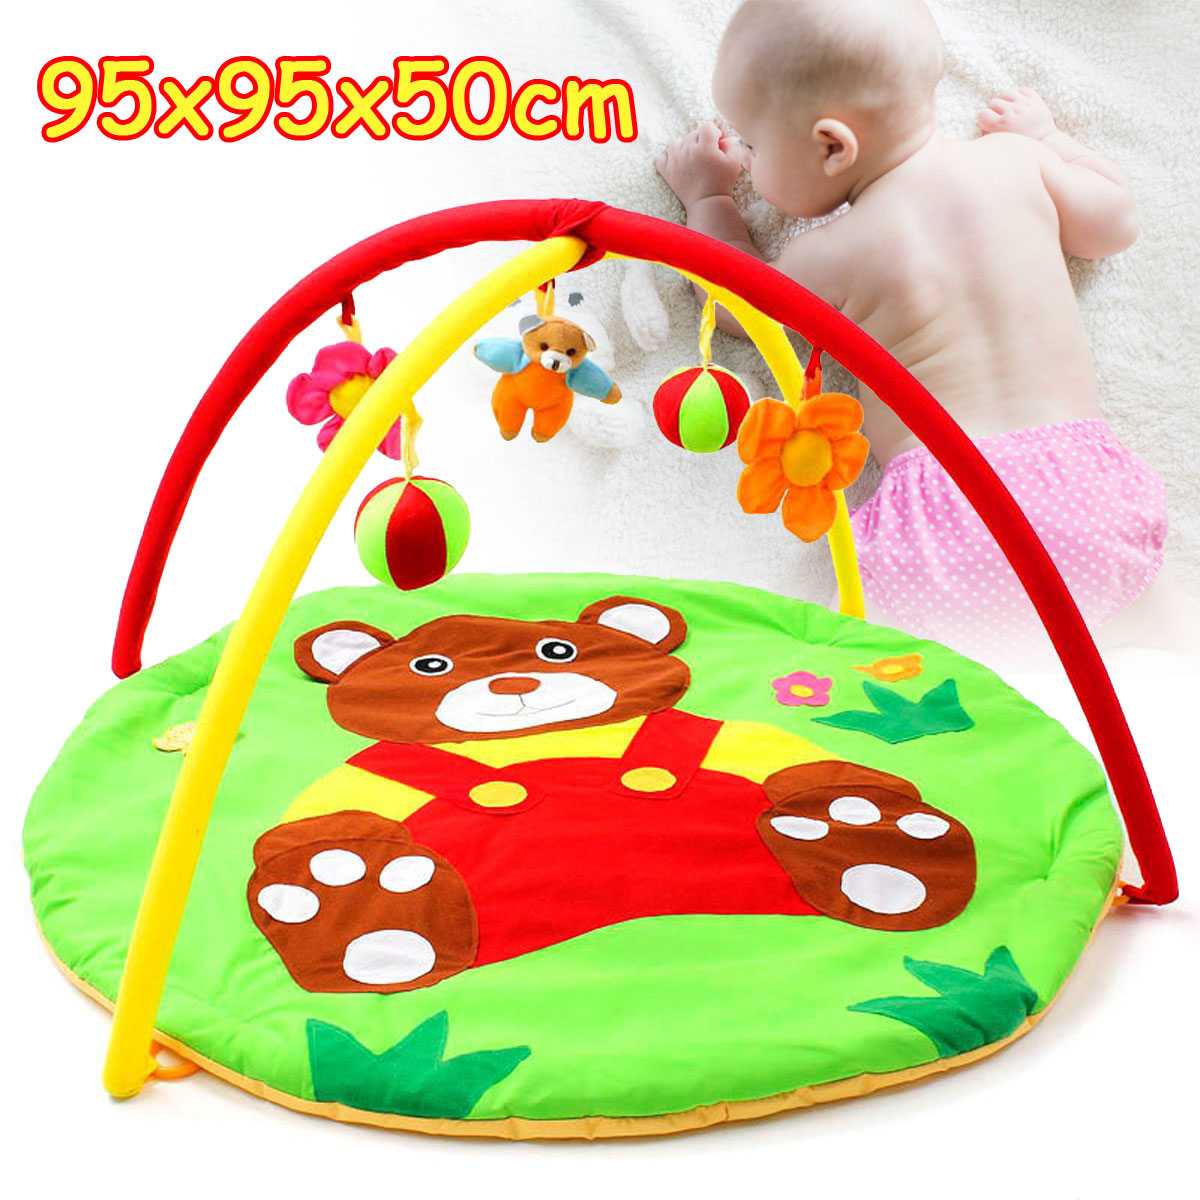 Cartoon-Soft-Baby-Play-Mat-Kids-Rug-Floor-Mat-Boy-Girl-Carpet-Game-Mat-Baby-Activity-Mat-Toys-1339059-12